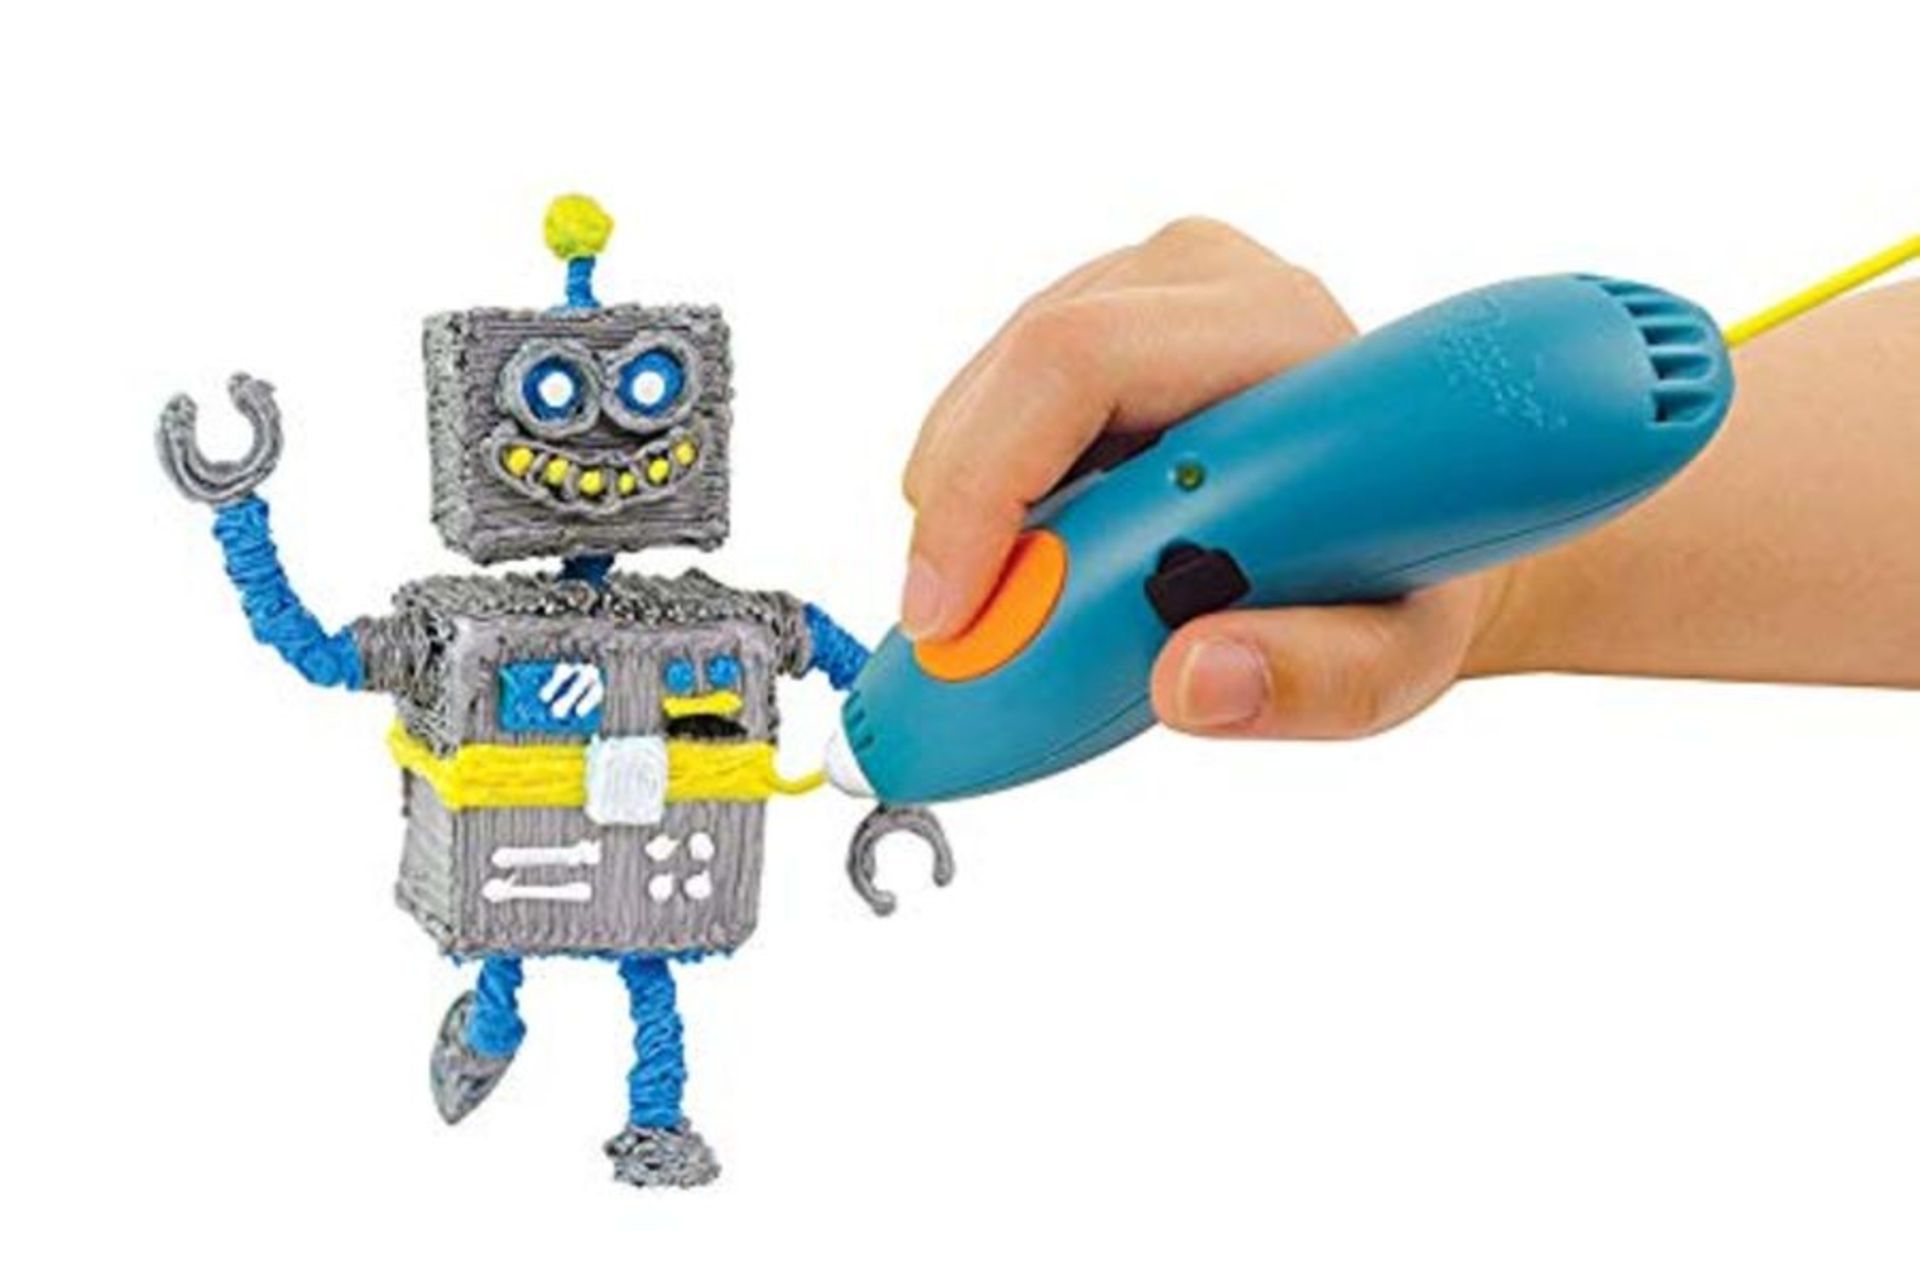 3Doodler Start 3D Printing Pen for Kids, Age 6 & Up-STEM Toy for Boys & Girls-Essentia